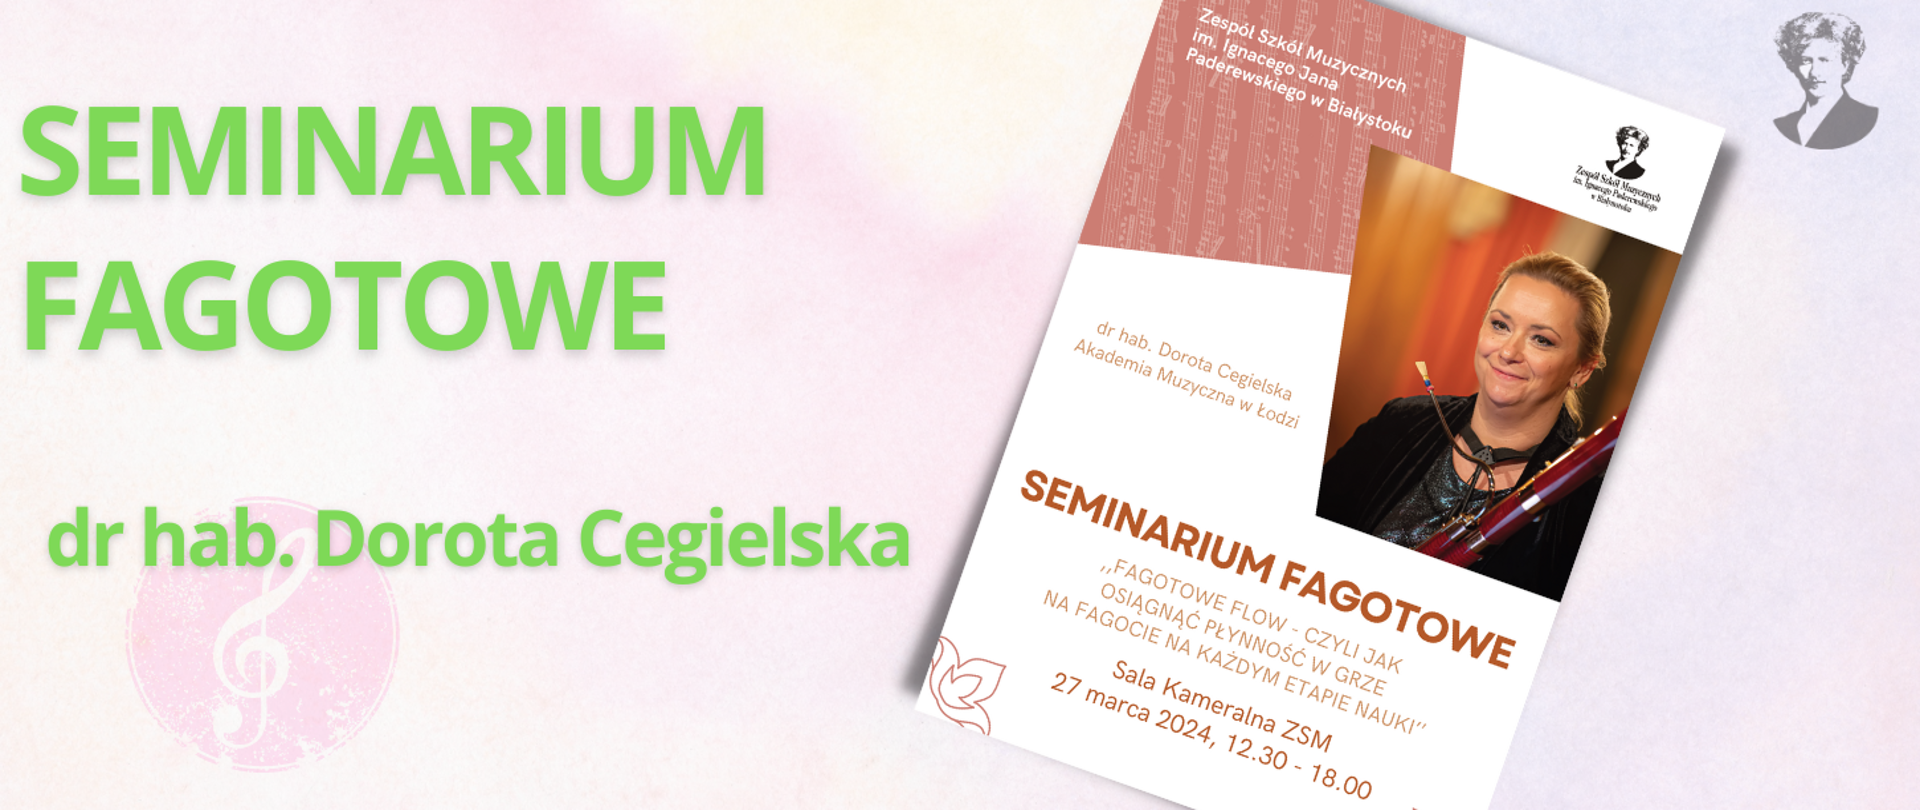 Na jasno-różowym tle zielony napis "Seminarium fagotowe dr hab. Dorota Cegielska". Po prawej stronie miniatura plakatu oraz podobizna Ignacego Paderewskiego.